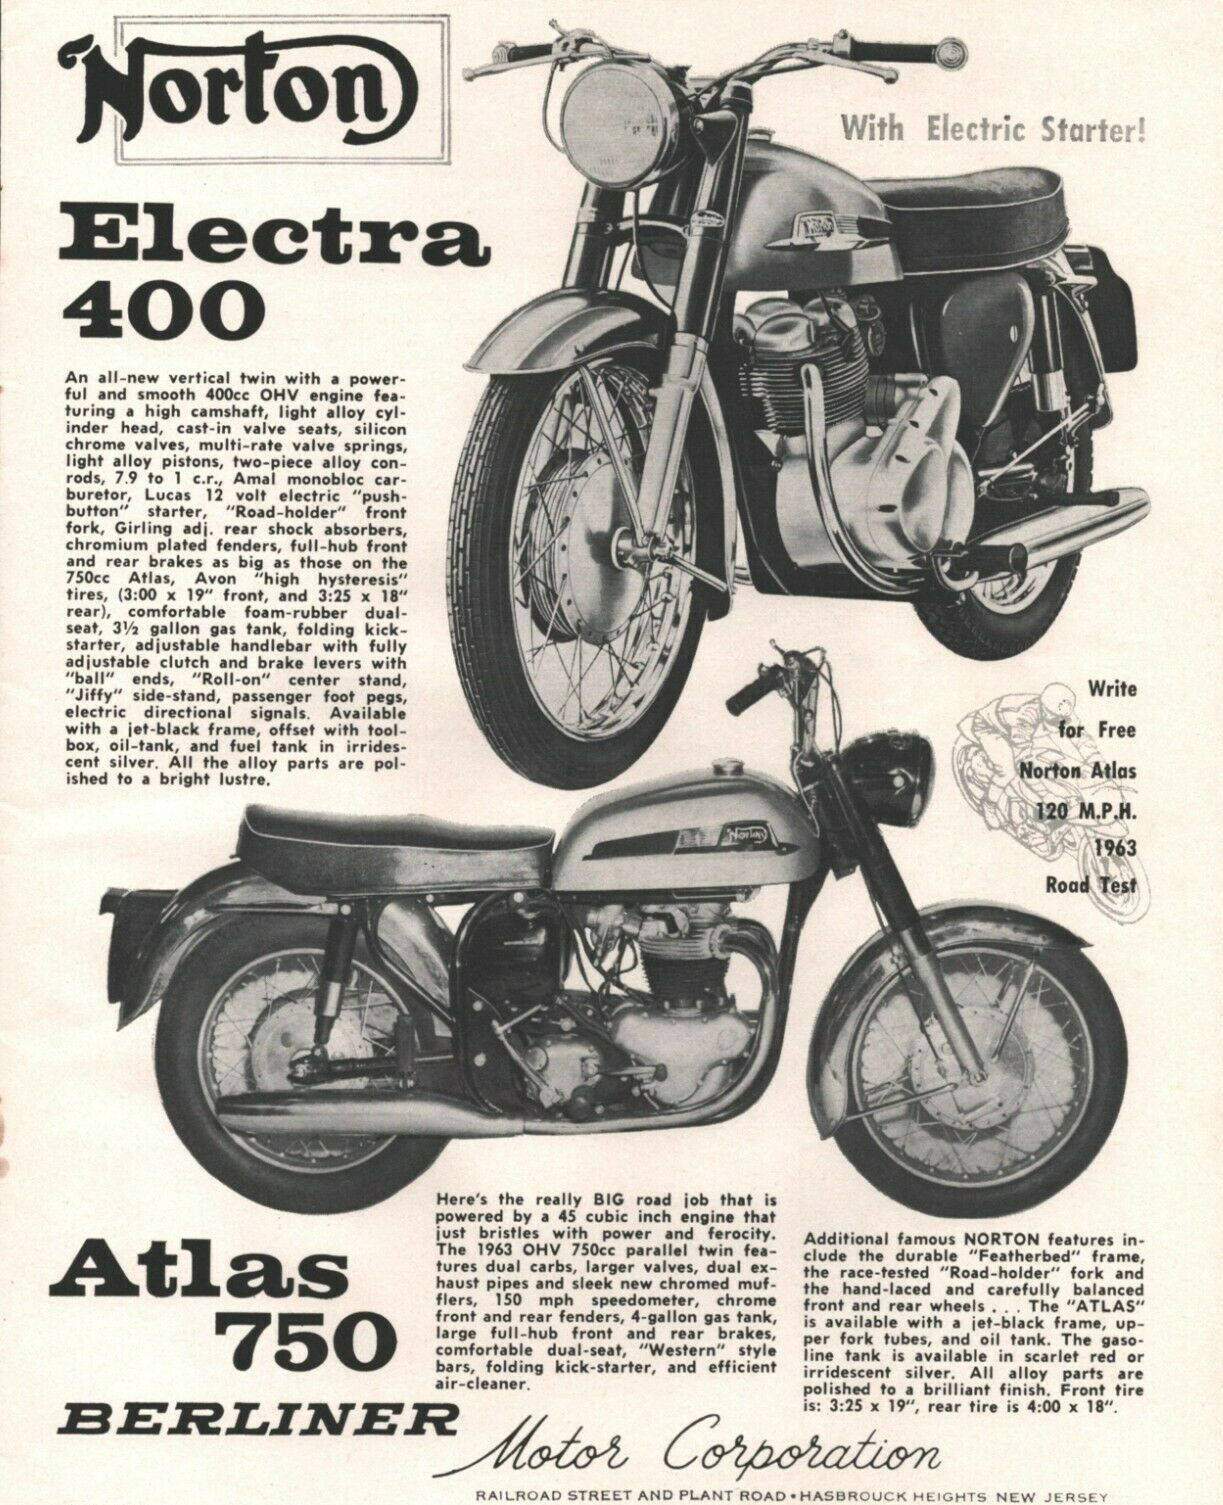 1963 Norton Electra 400 & Atlas 750 Berliner - Vintage Motorcycle Ad